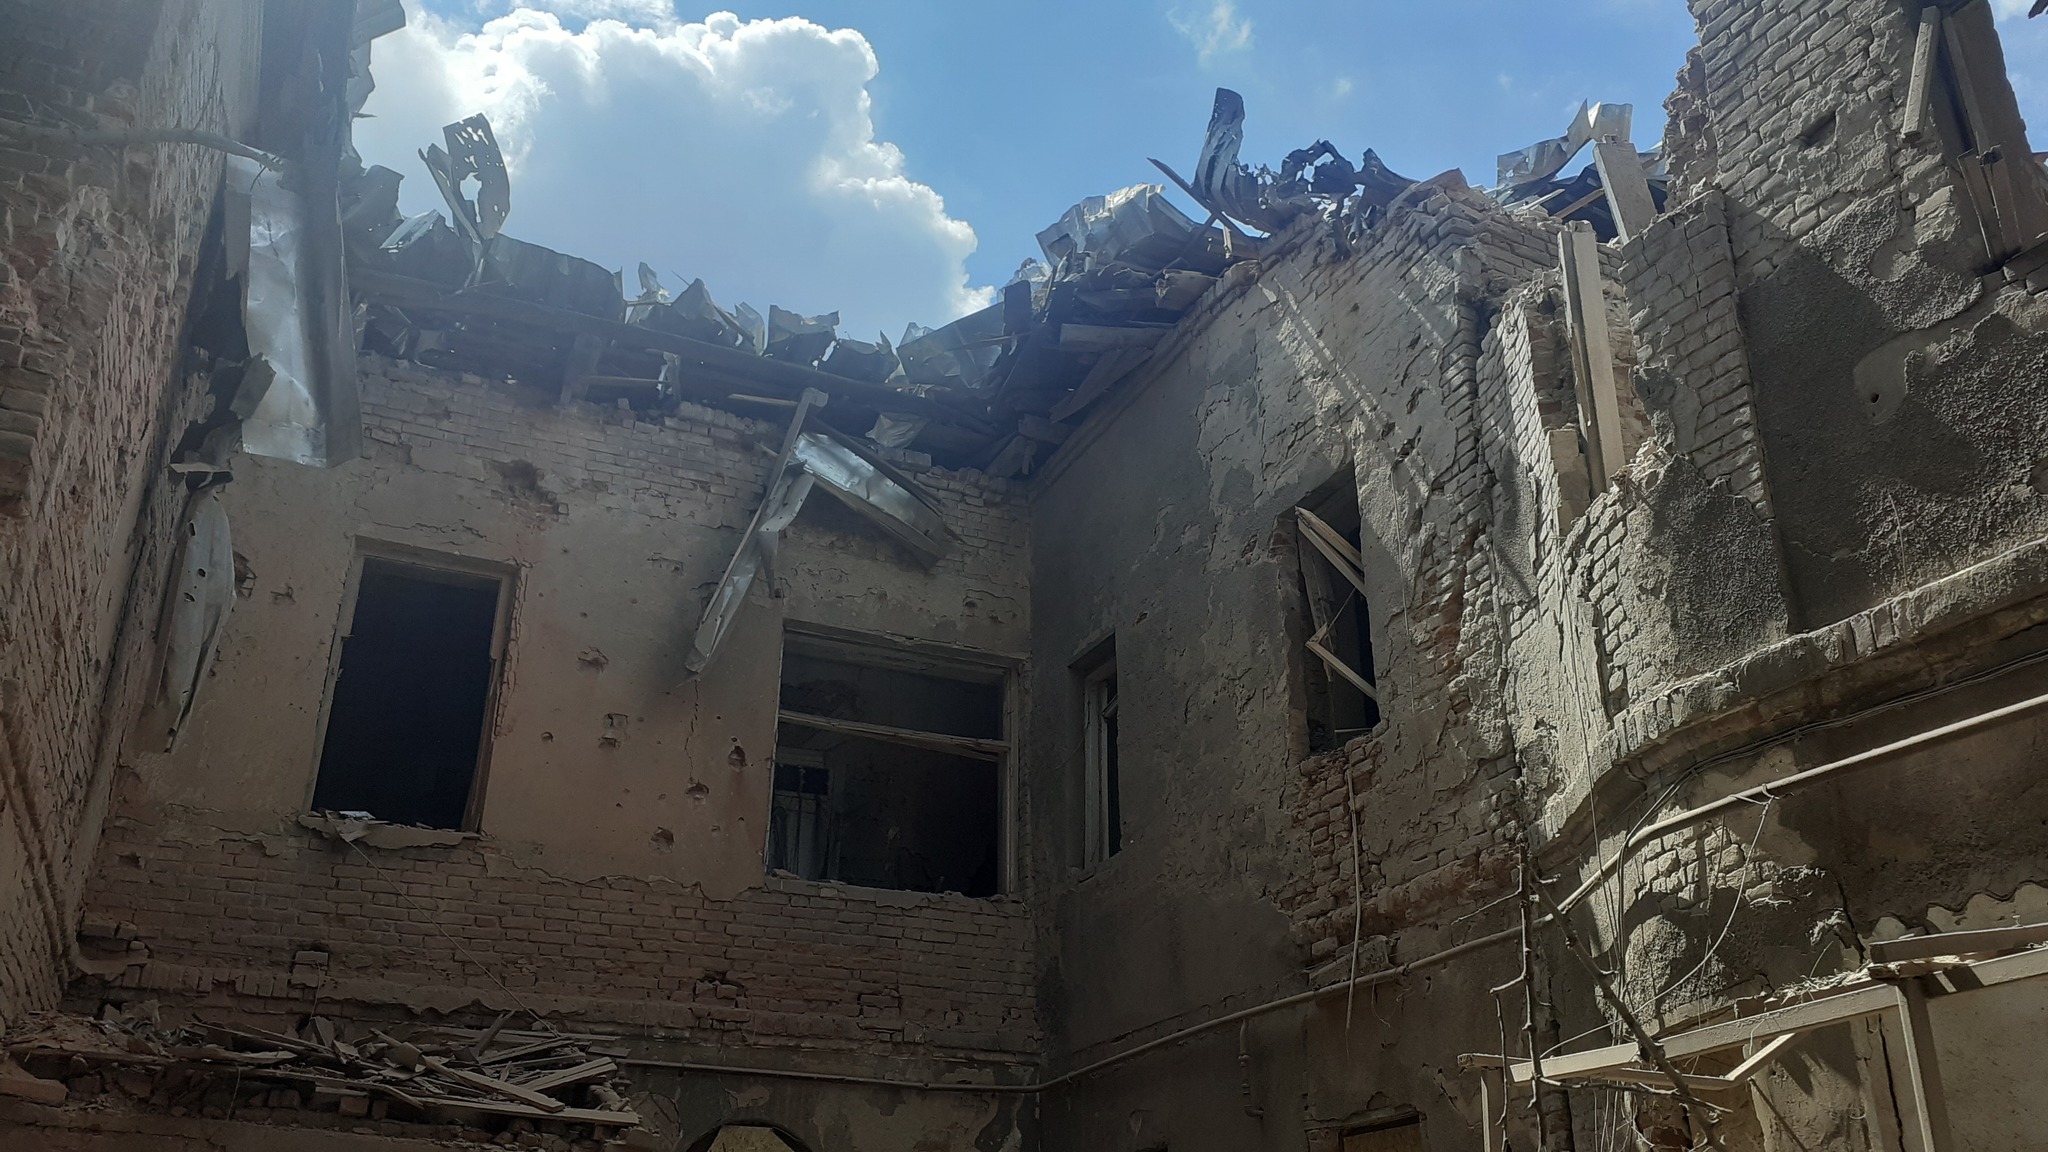 Частково зруйнований житловий будинок на Подолі у Харкові (липень 2022 року). Фото: Сергій Петров, CC BY-SA 4.0